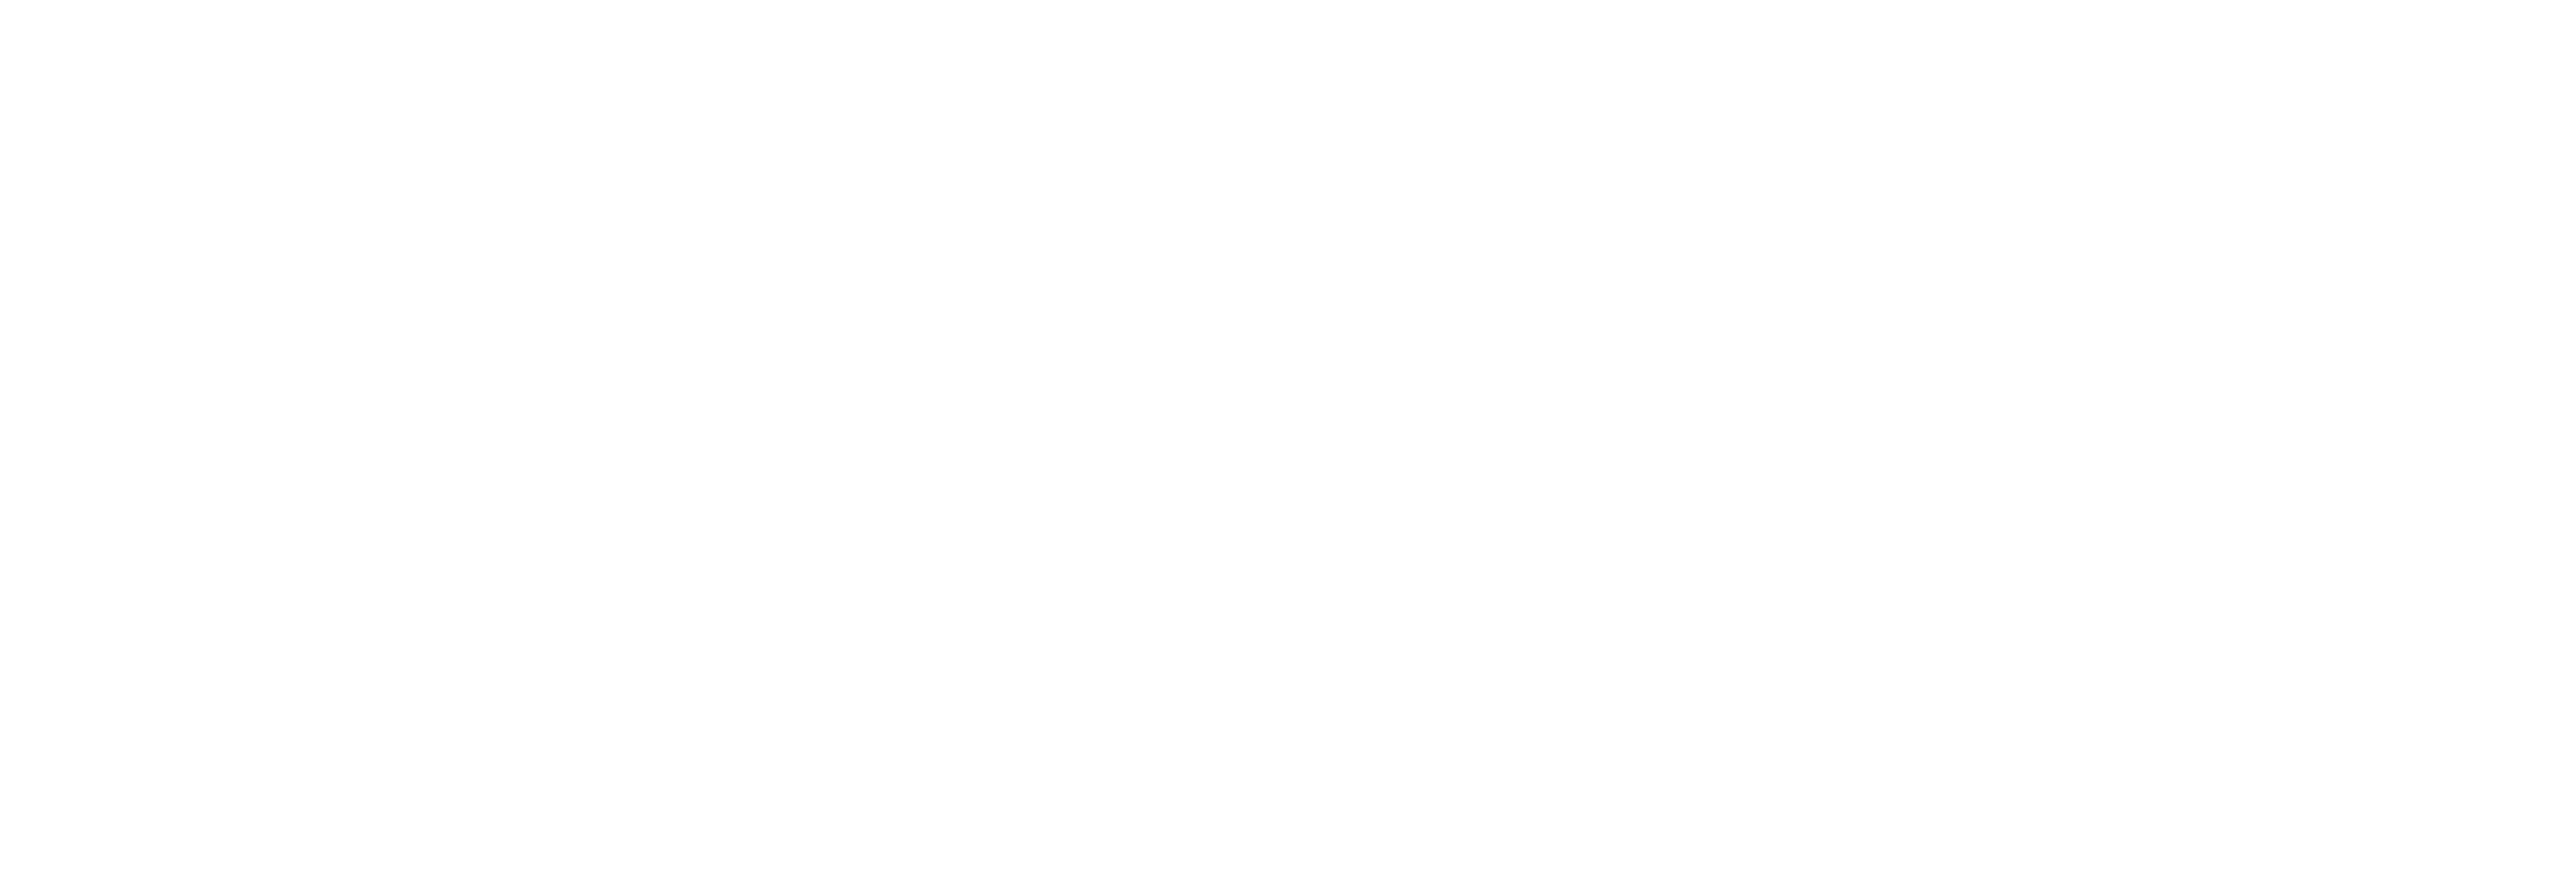 NeoArt Design